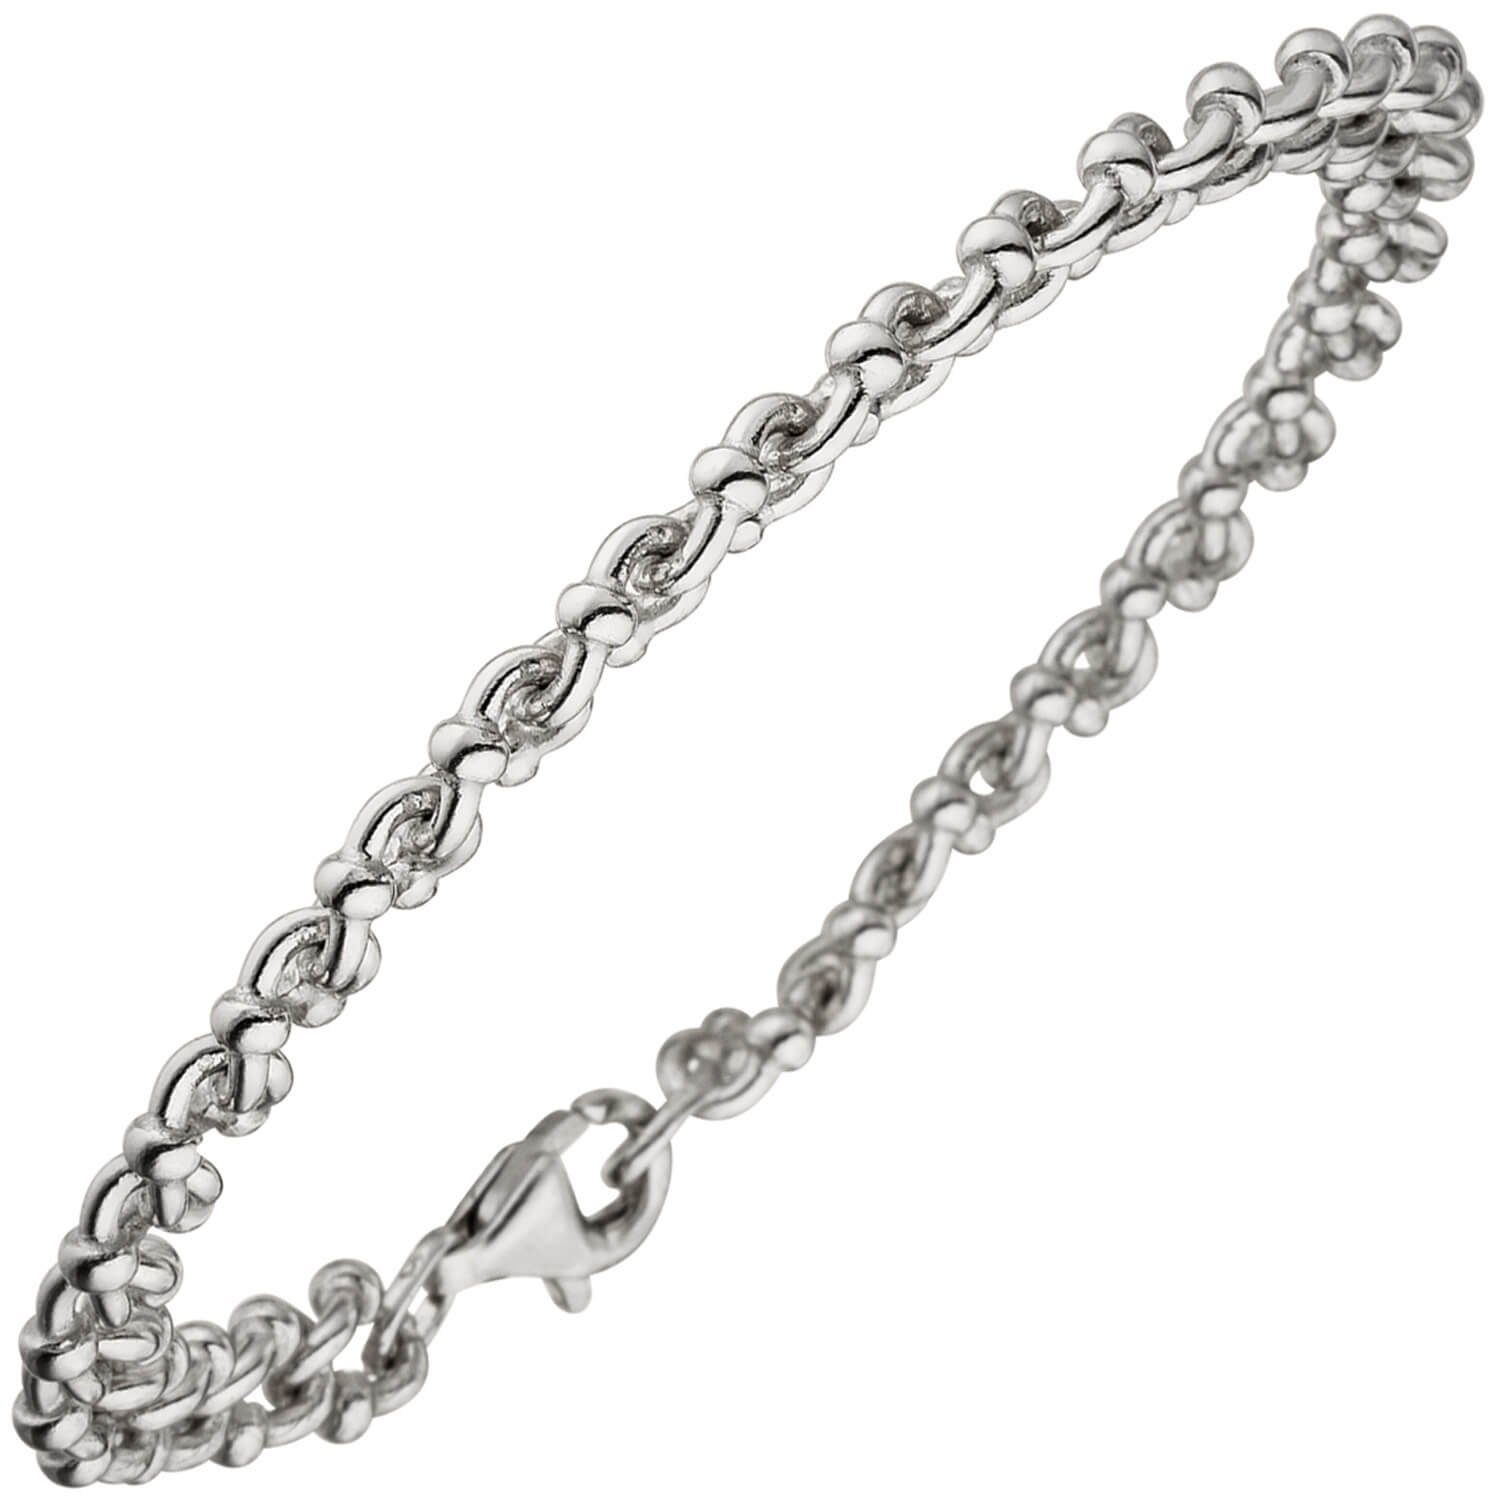 Schmuck Krone Silberarmband 7,3mm Armband Krebskette aus 925 Silber rhodiniert Armschmuck, 21cm